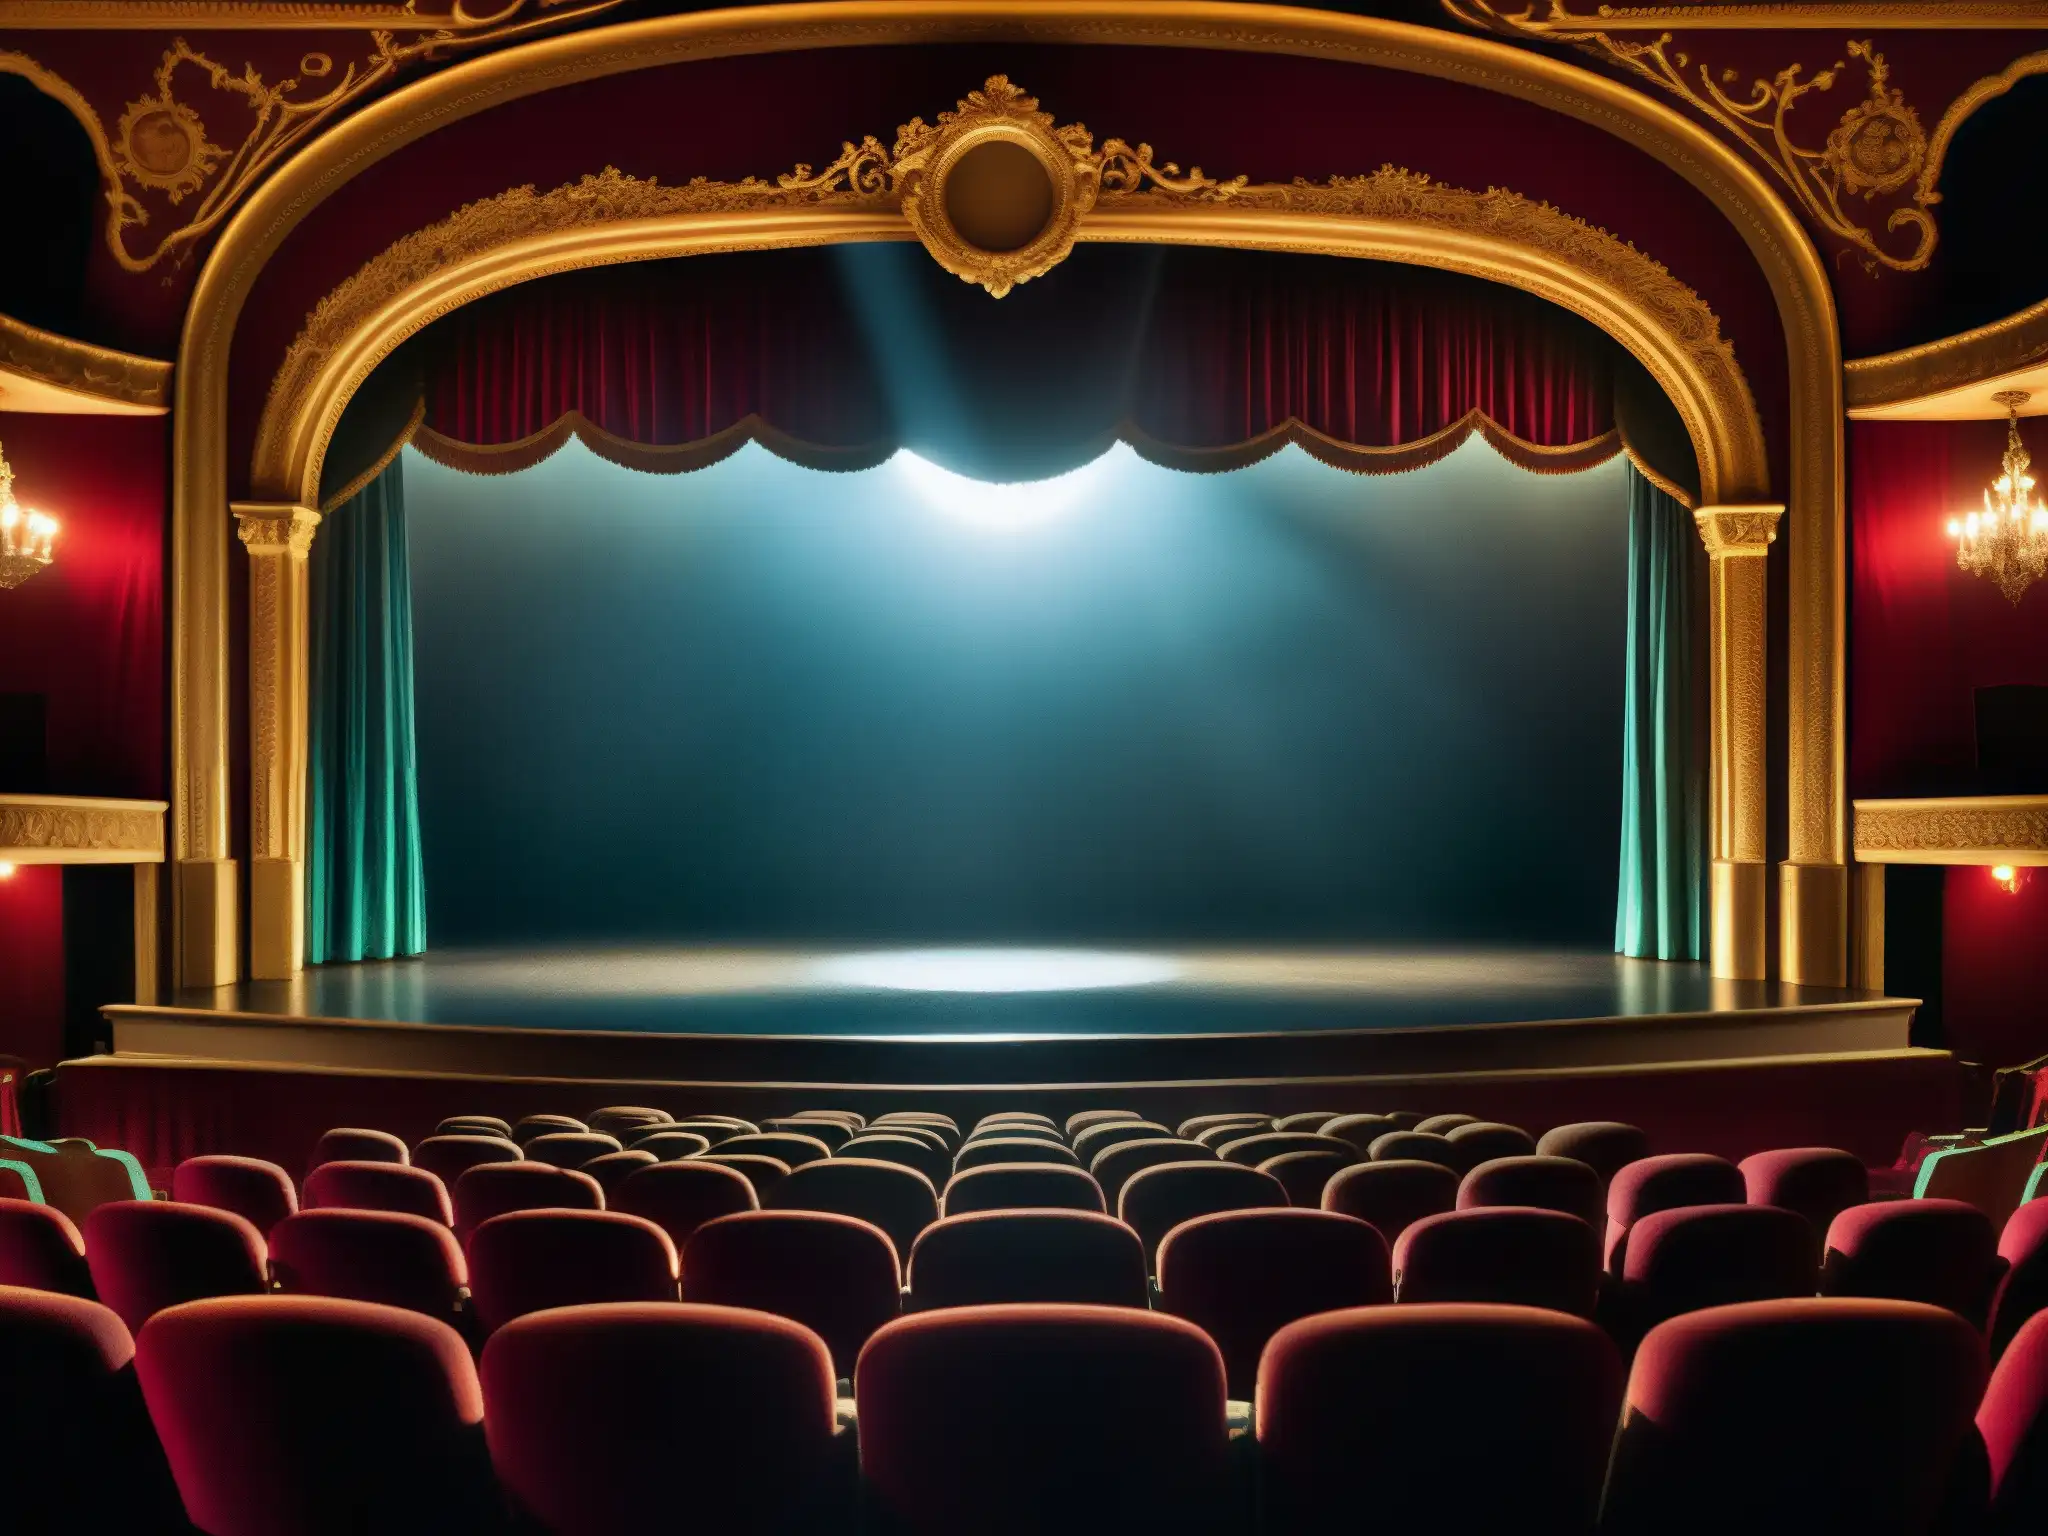 En el misterioso escenario del teatro, un espejo antiguo refleja asientos vacíos